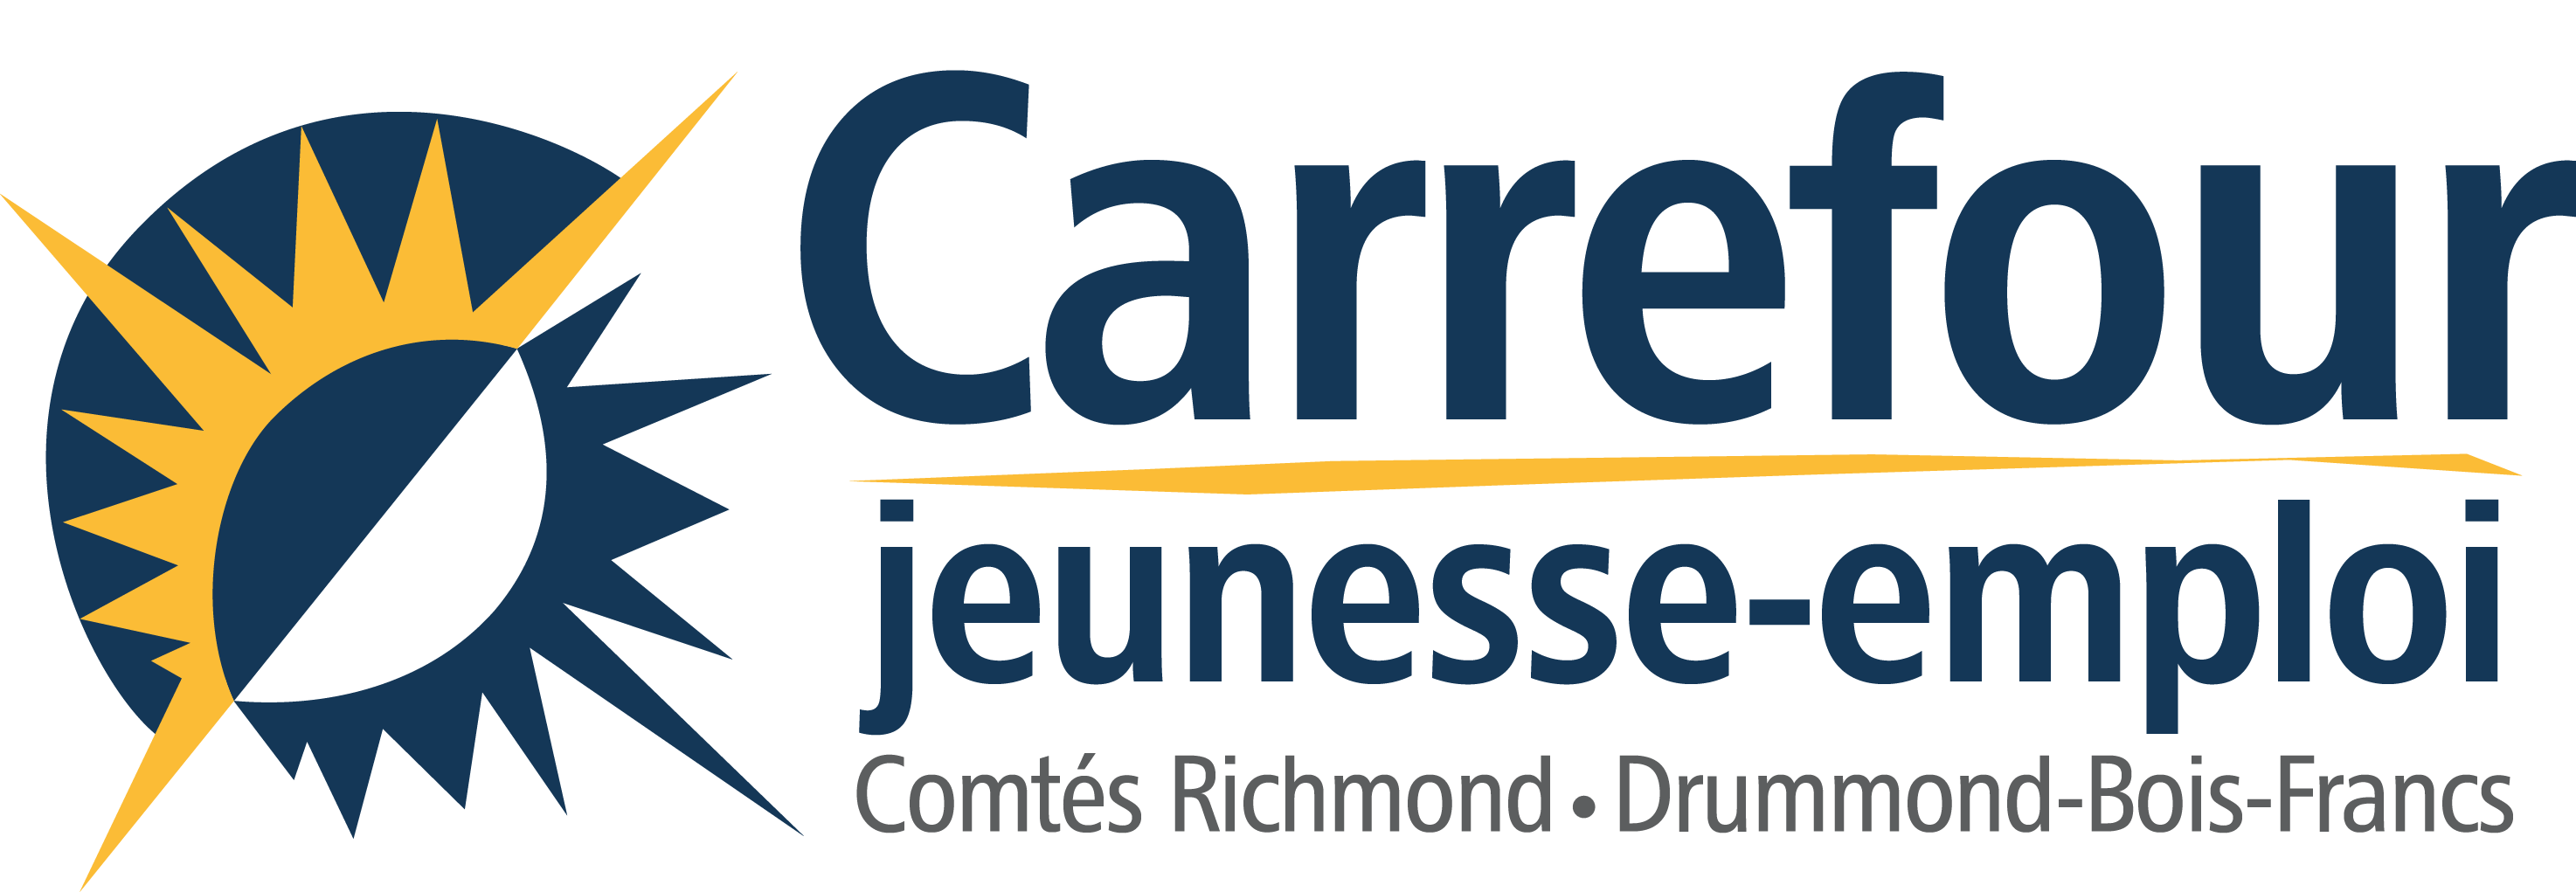 Carrefour jeunesse-emploi du comté de Richmond